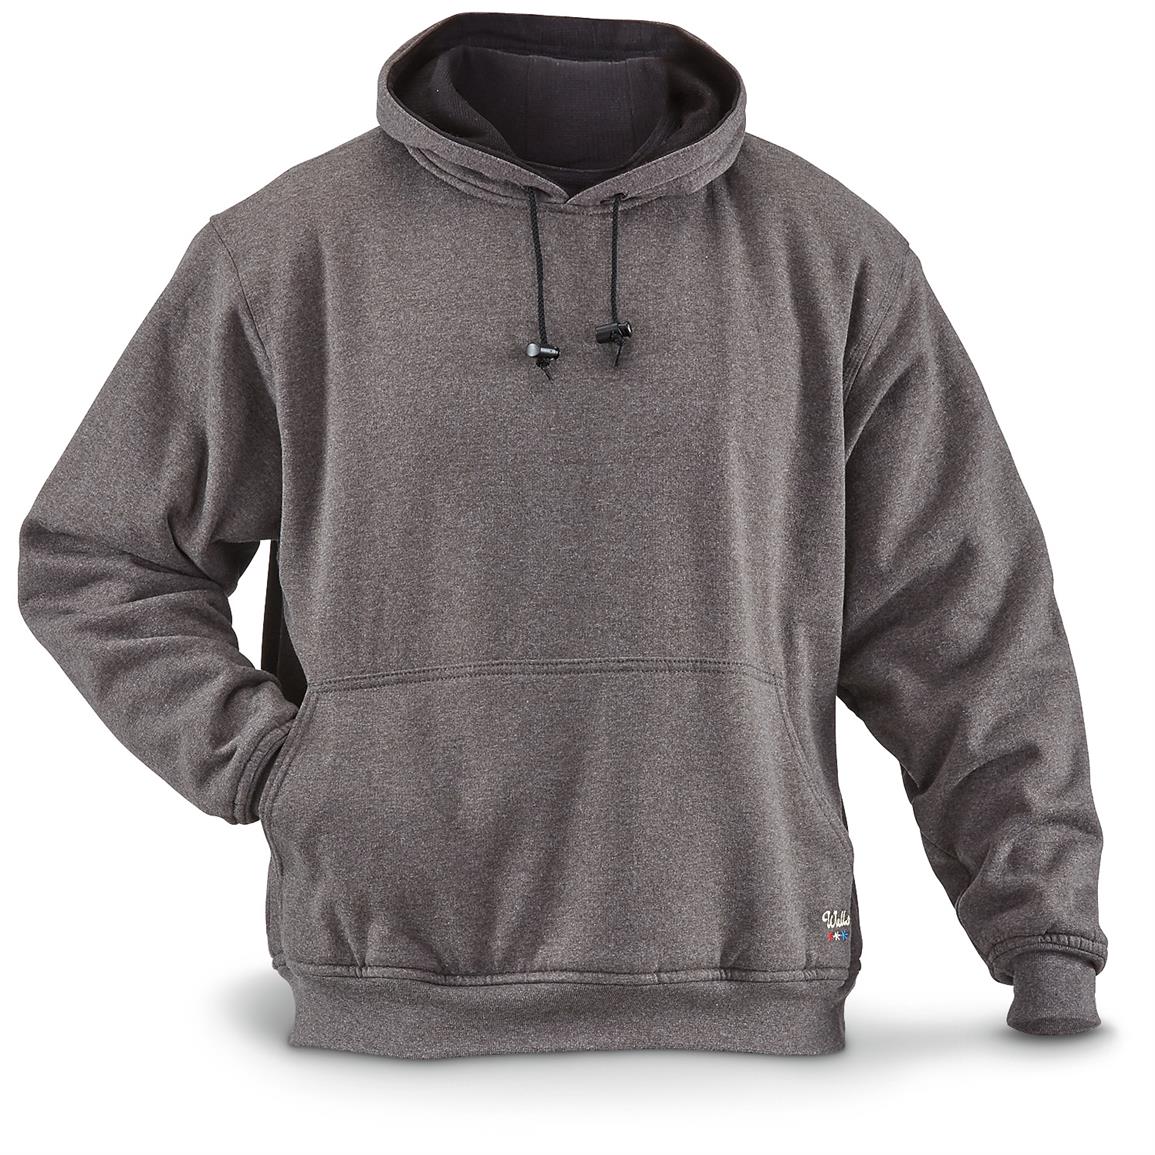 Walls Men's Pullover Fleece Hoodie - 660971, Sweatshirts & Hoodies at